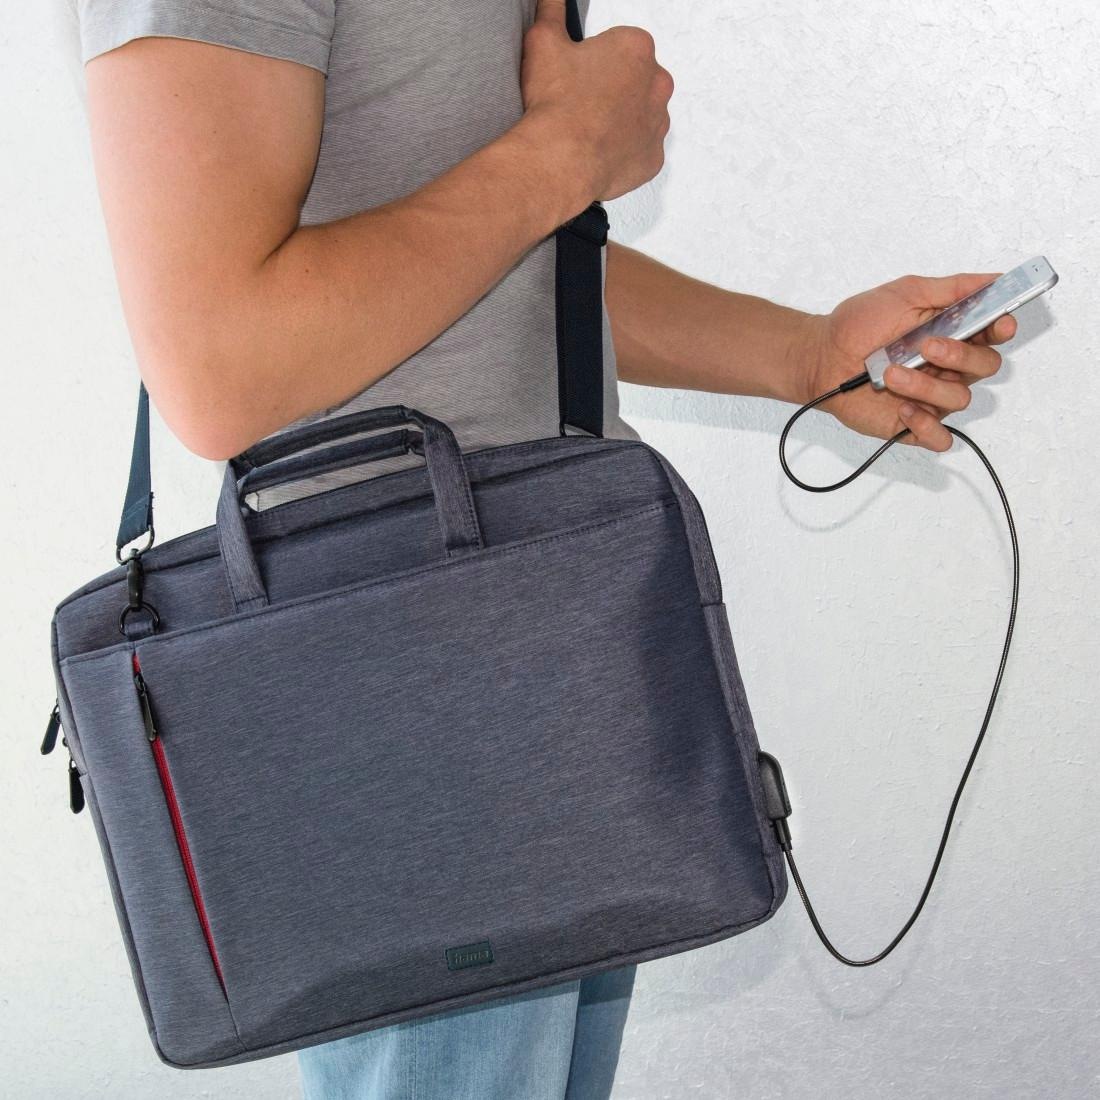 Hama Laptoptasche »Notebook Tasche bis 34 cm (13,3 Zoll), Farbe Blau, modisches Design«, Mit Tabletfach, Vordertaschen, Organizerstruktur, Trolleyband,USB-Port